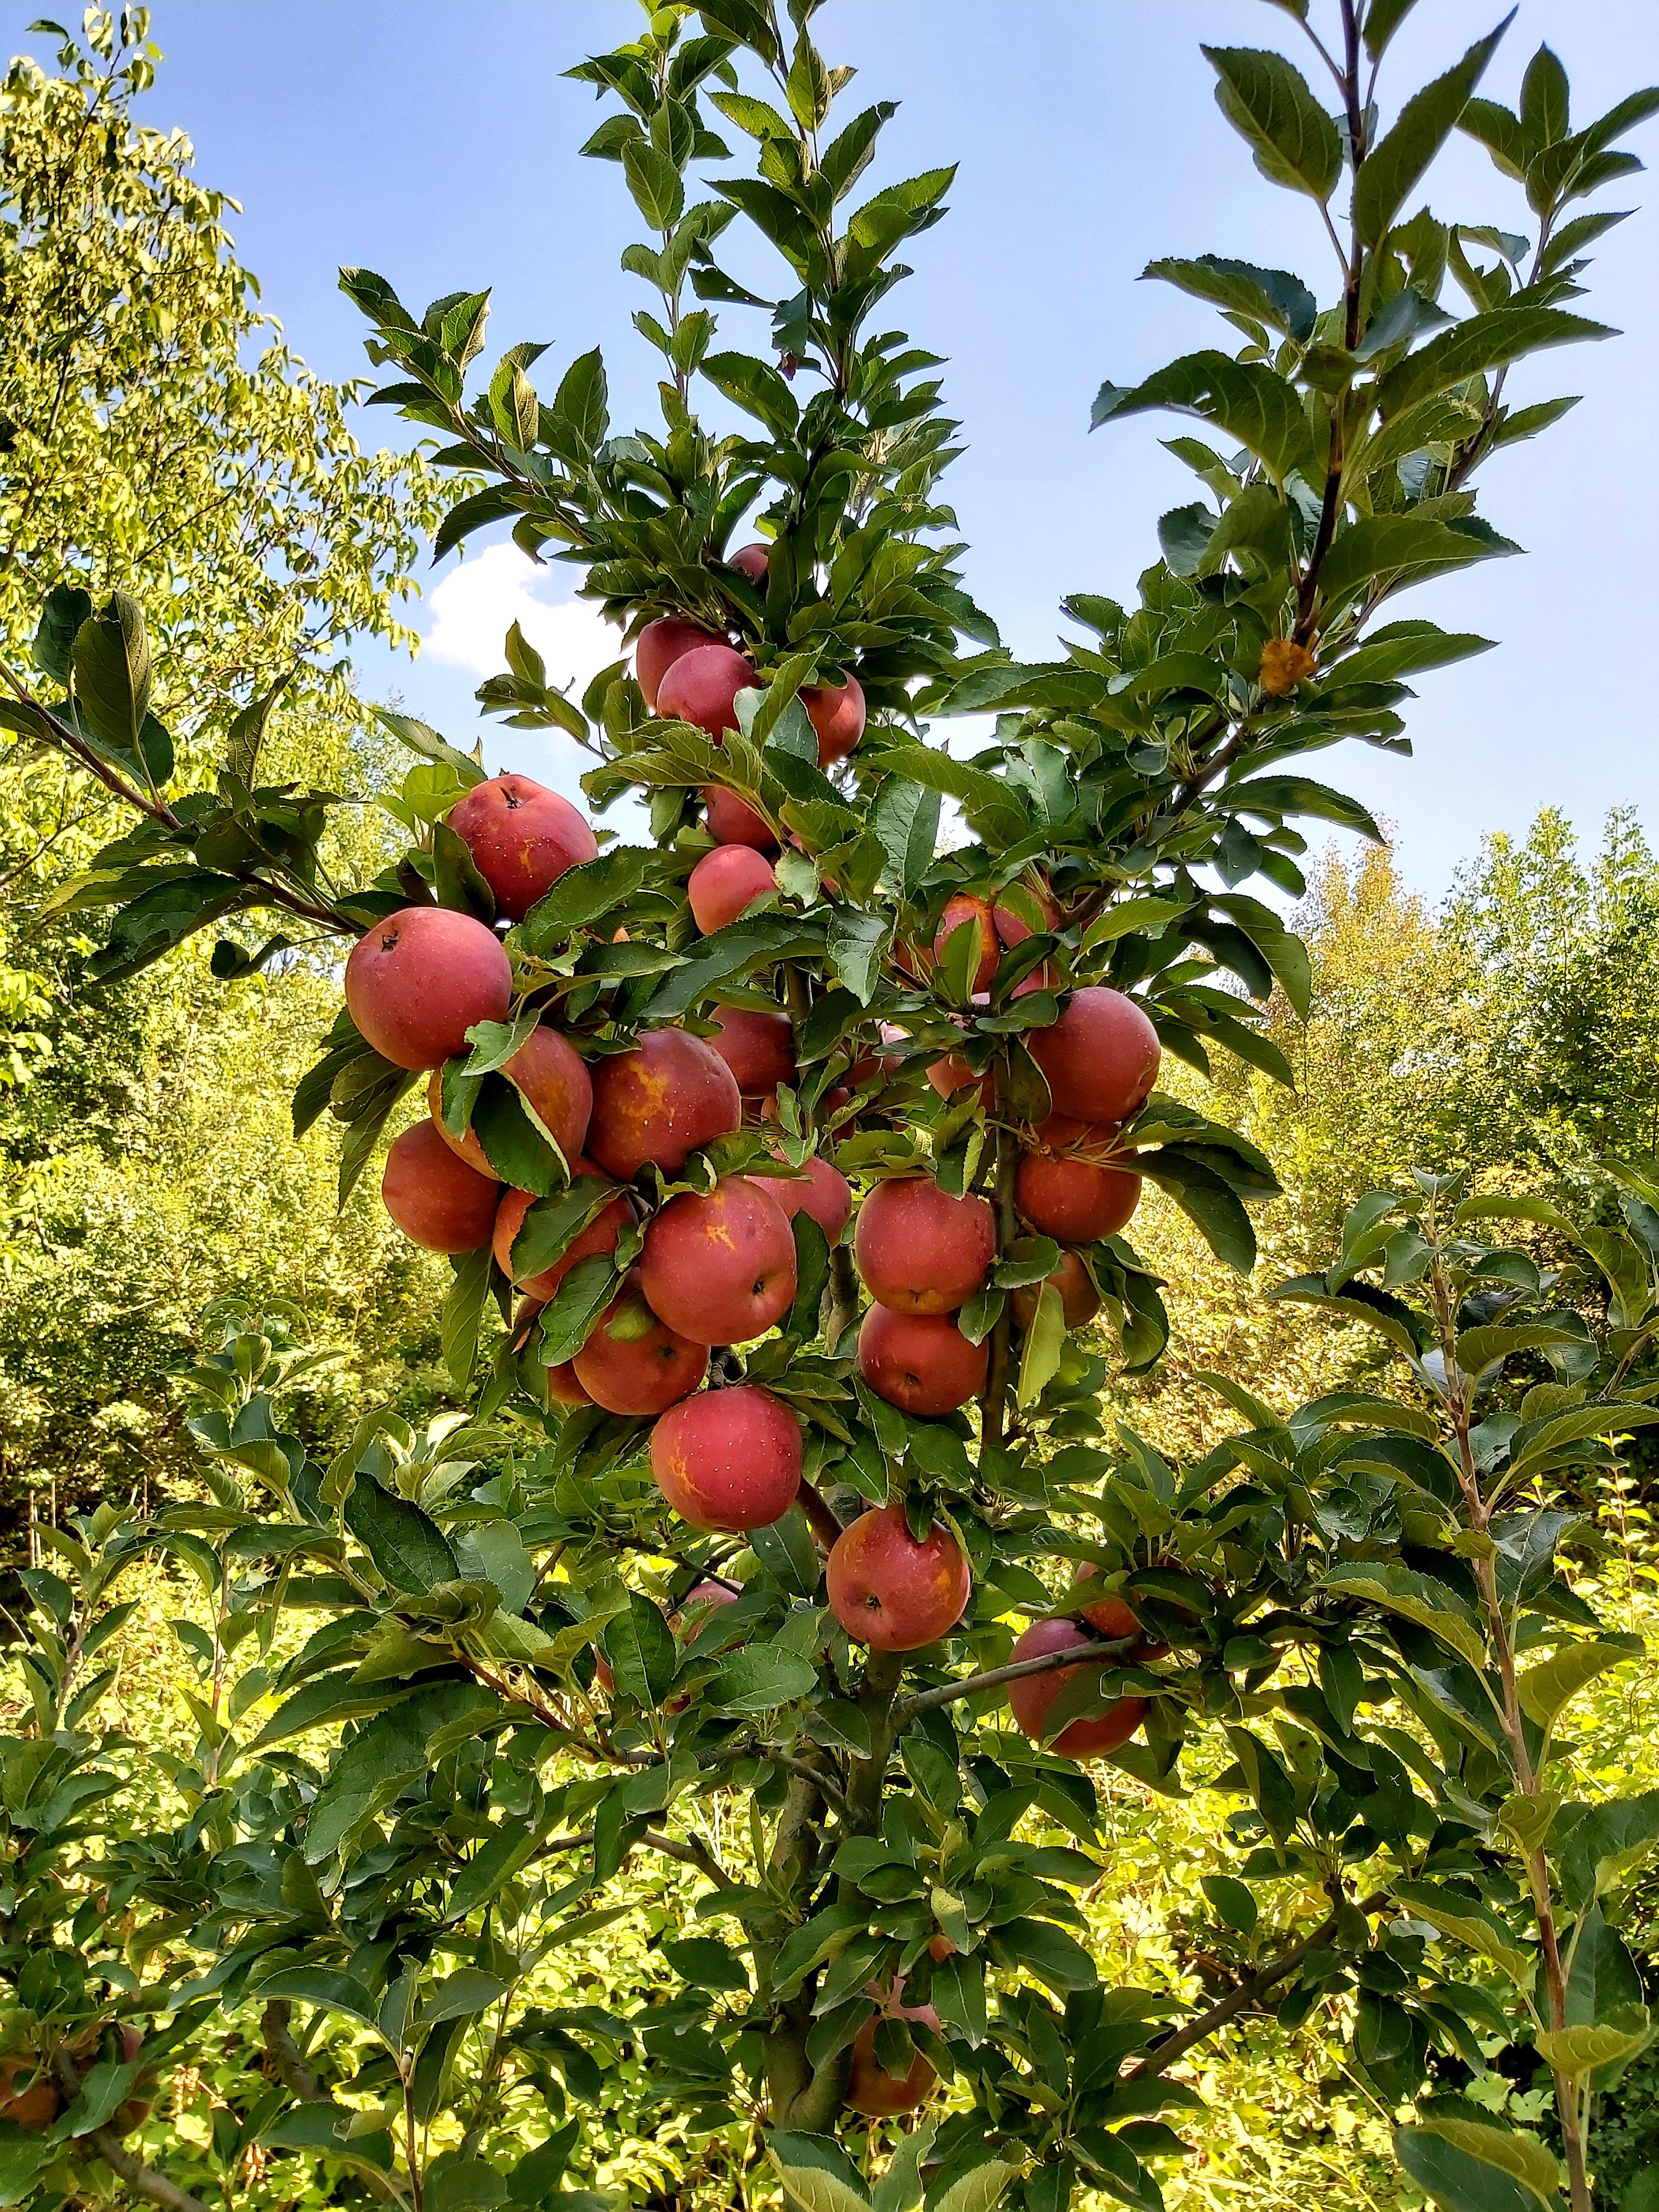 Elma - Ali Oruç tarafından verilen satılık elma ilanını ve diğer satılık elma ilanlarını tarimziraat.com adresinde bulabilirsiniz